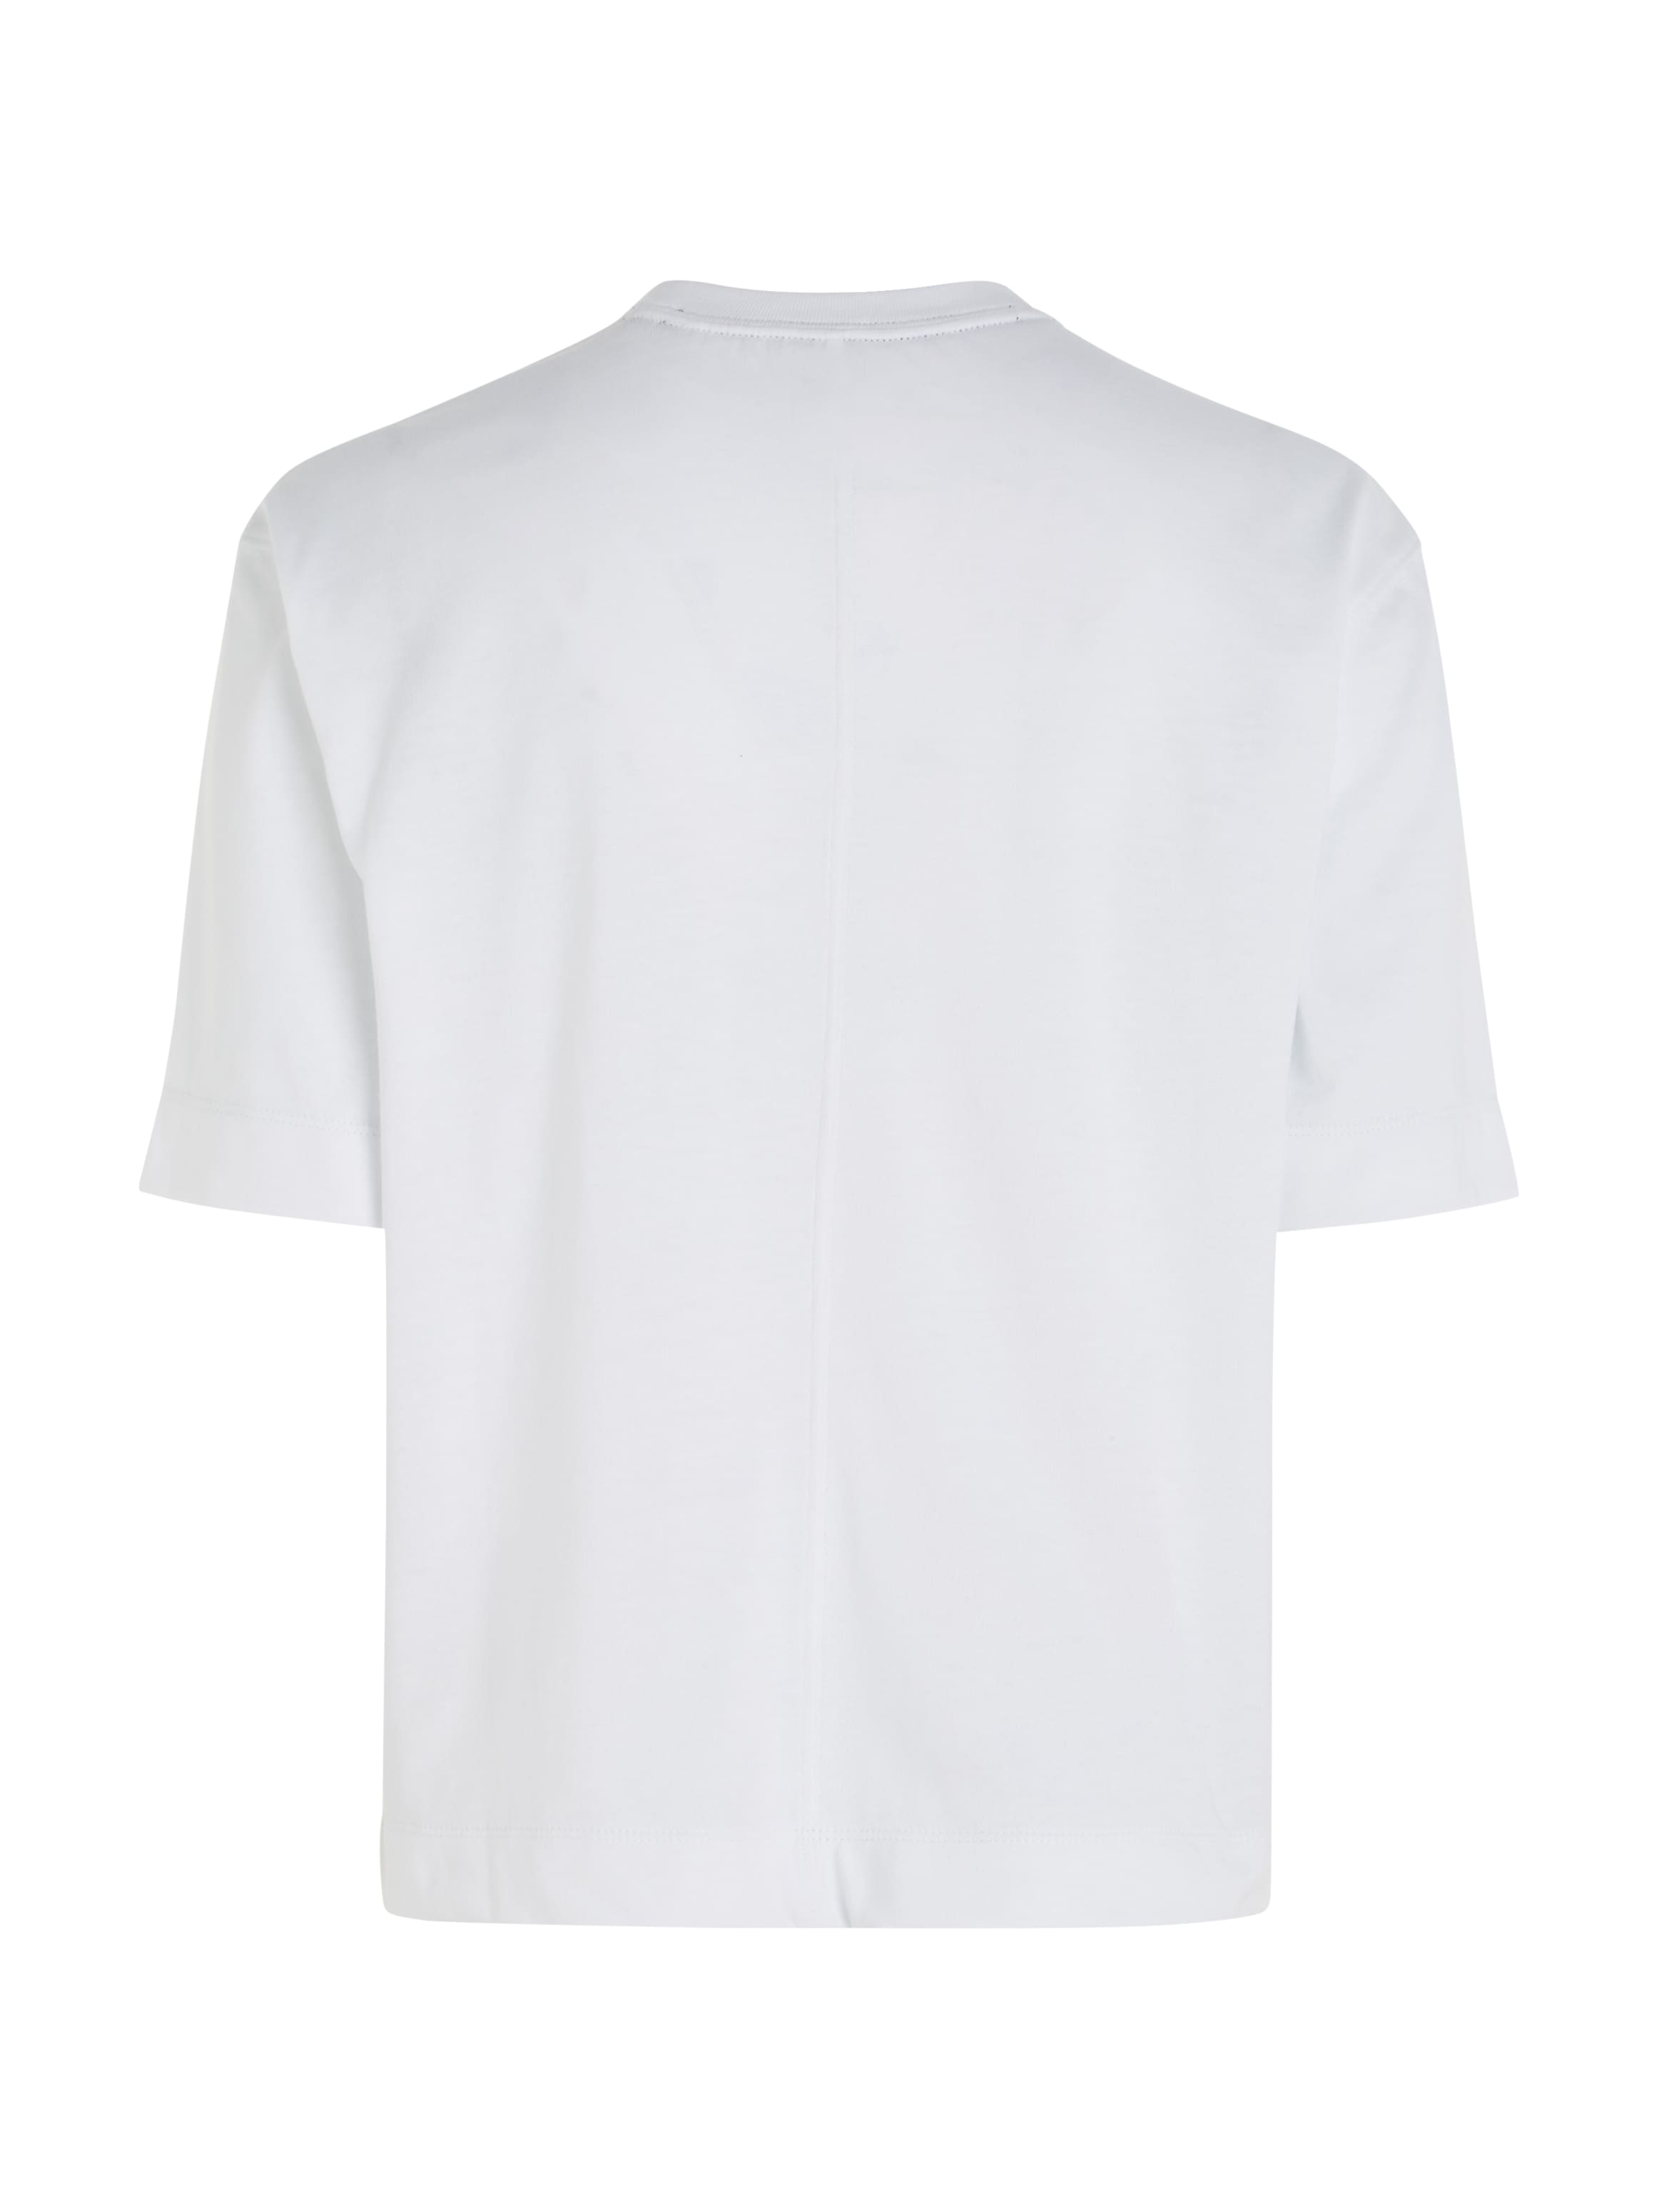 bei Sport kaufen online OTTO Calvin Klein T-Shirt